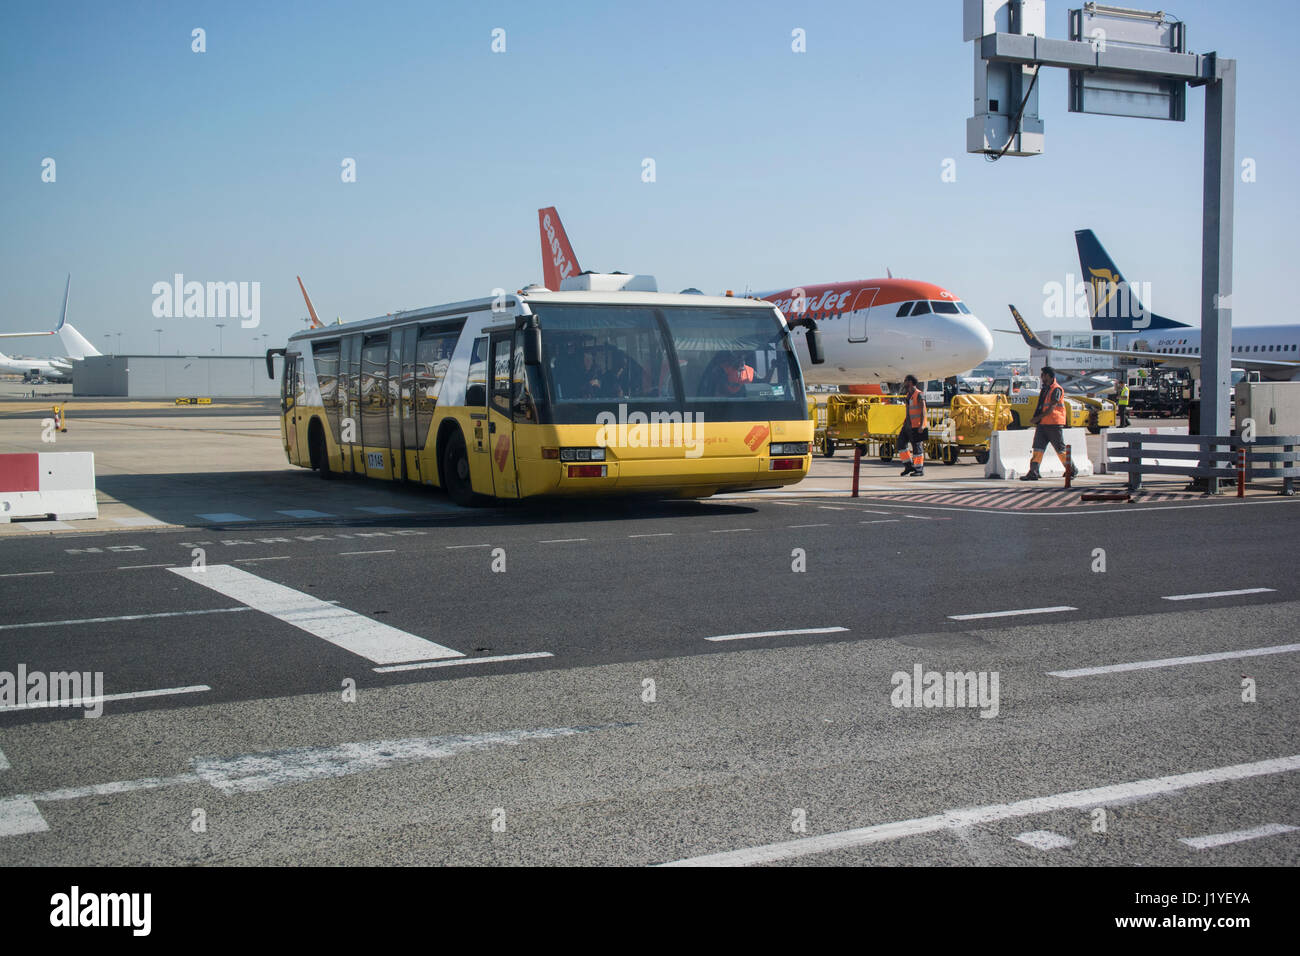 Portway, Handling de Portuga SA, aircraft passenger bus at Lisbon airport Stock Photo